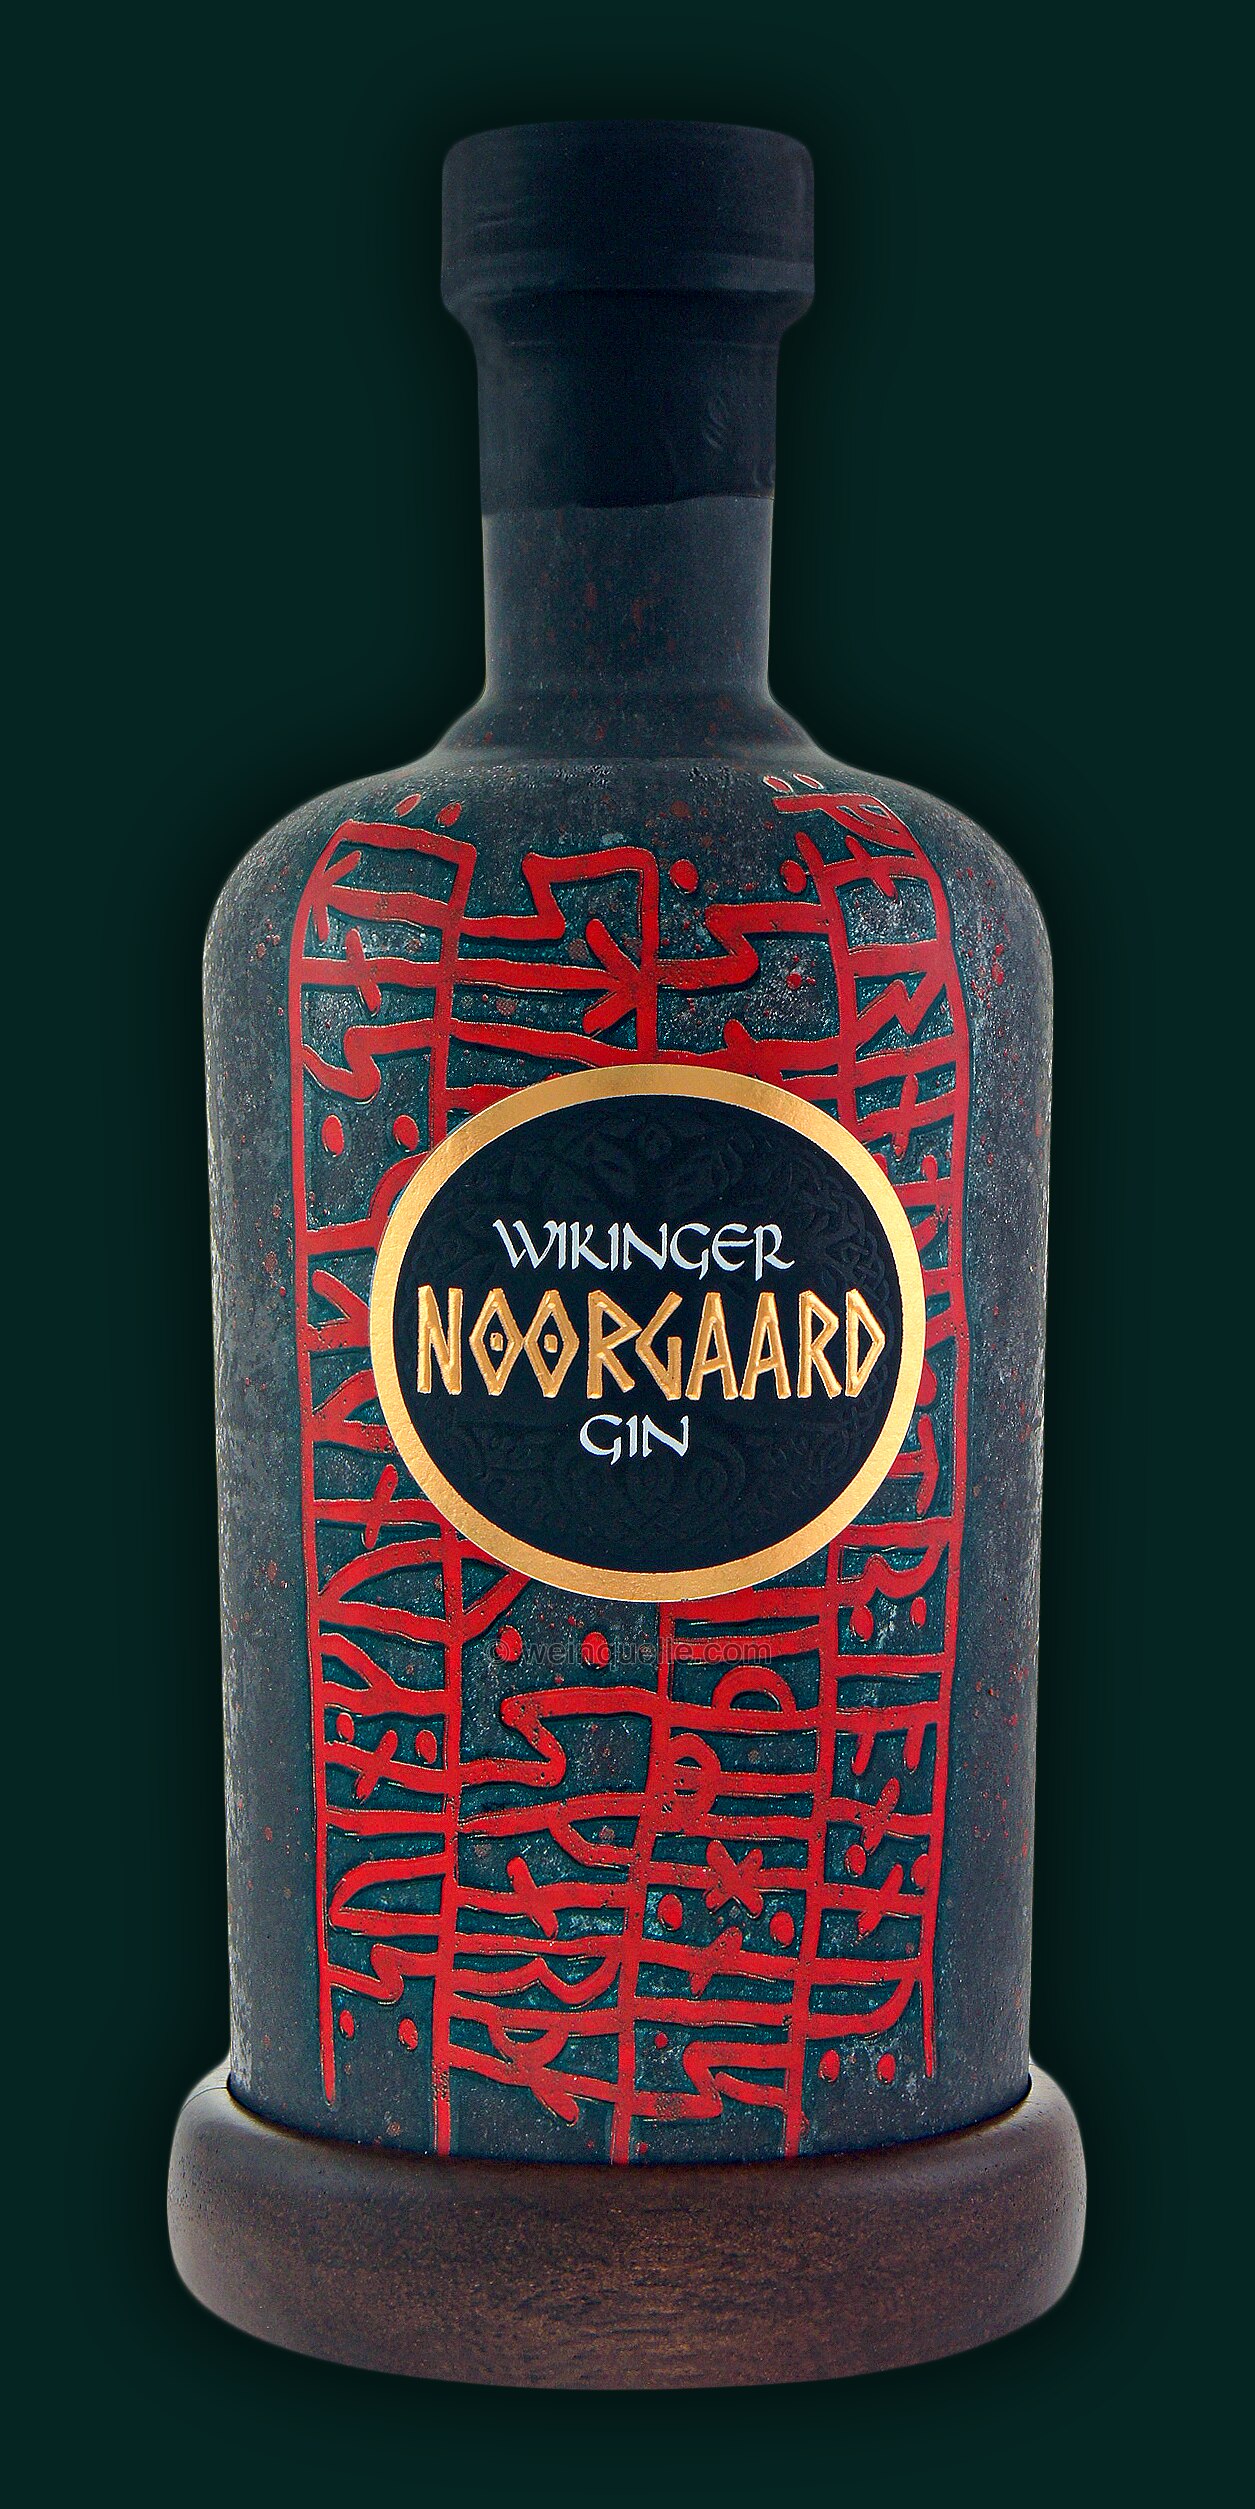 Wikinger Noorgaard Gin, € Weinquelle Lühmann - 30,95